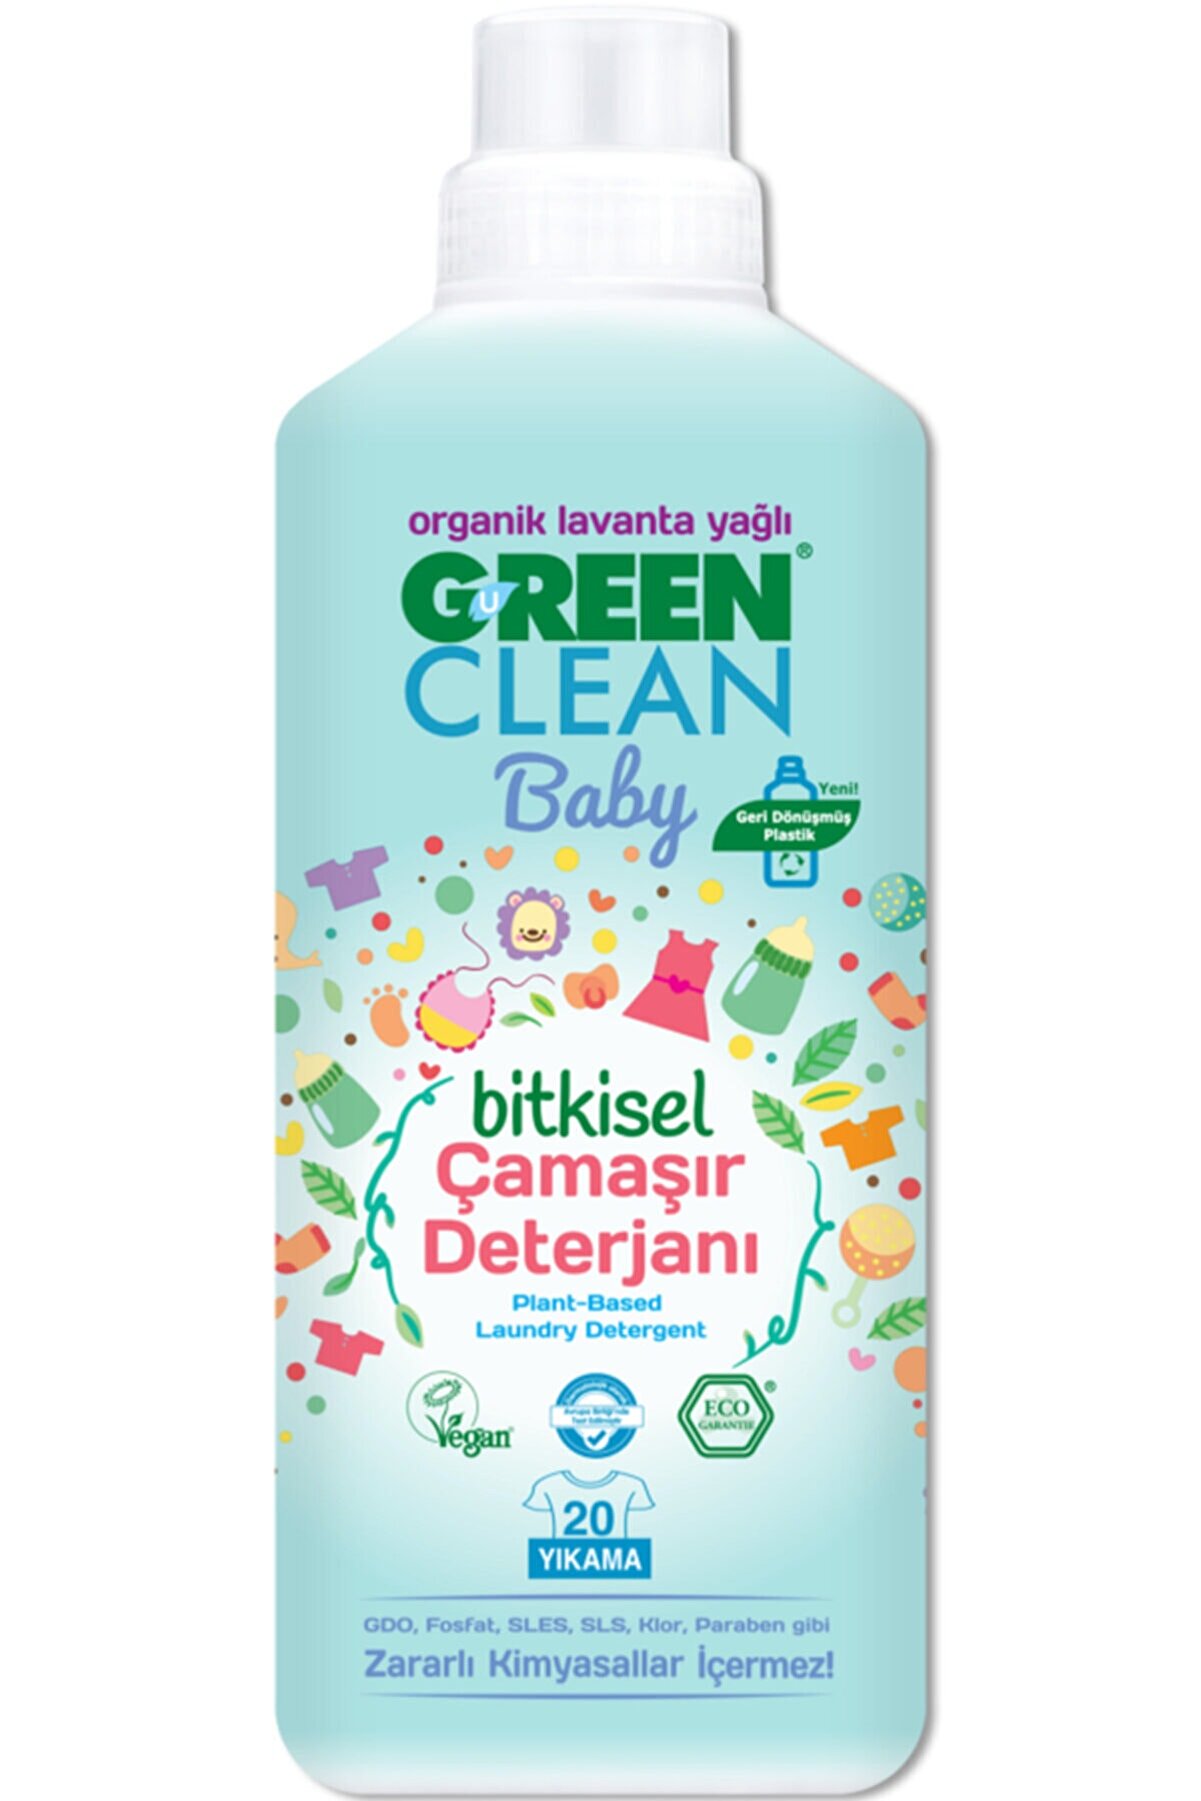 Green Clean Baby Bitkisel Çamaşır Deterjanıorganik Lavanta Yağlı1000 ml